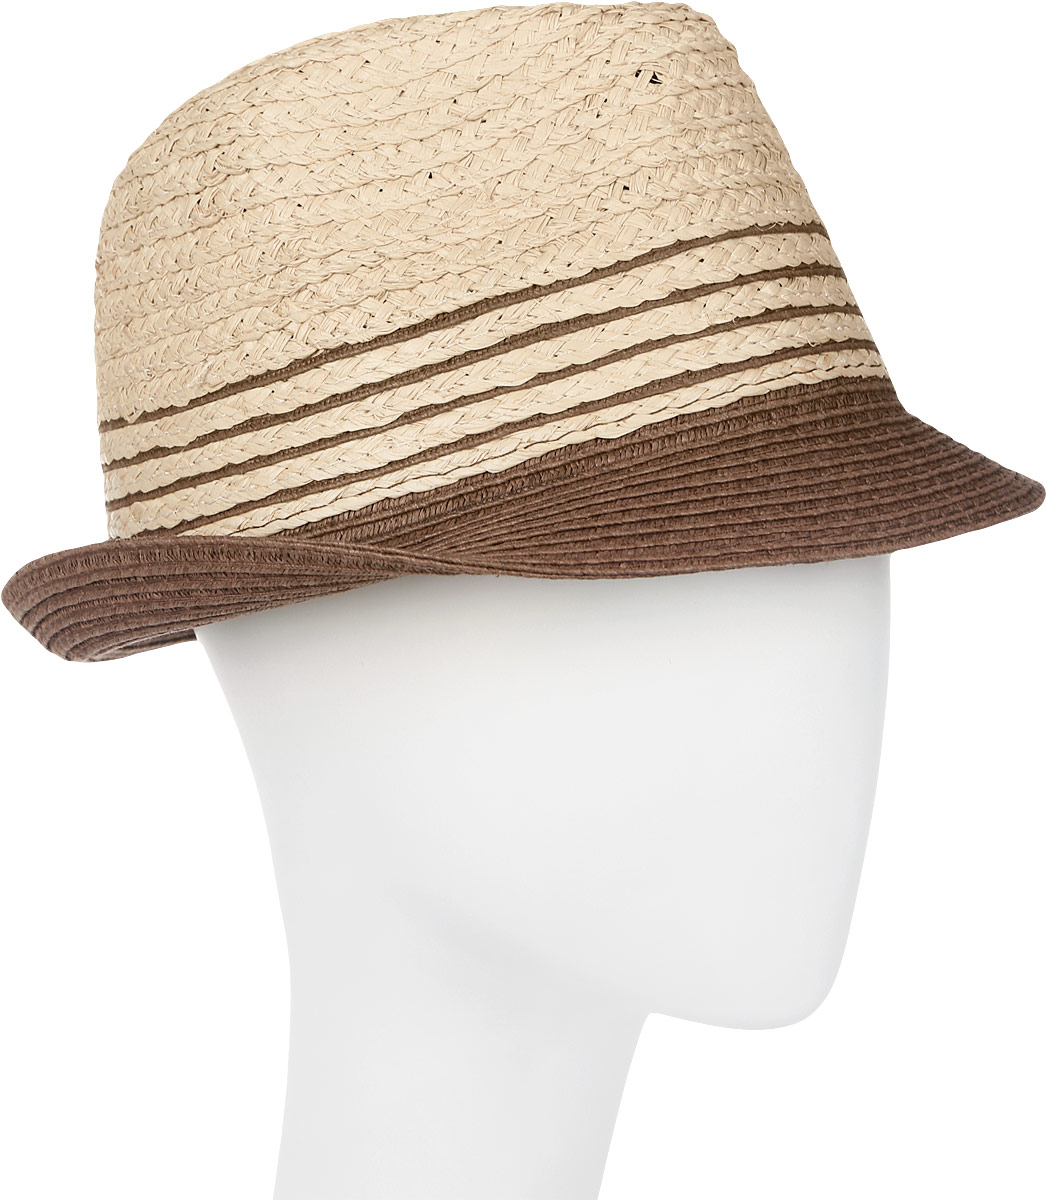 Шляпа женская Canoe Neel, цвет: коричневый. 1963549. Размер 56/59